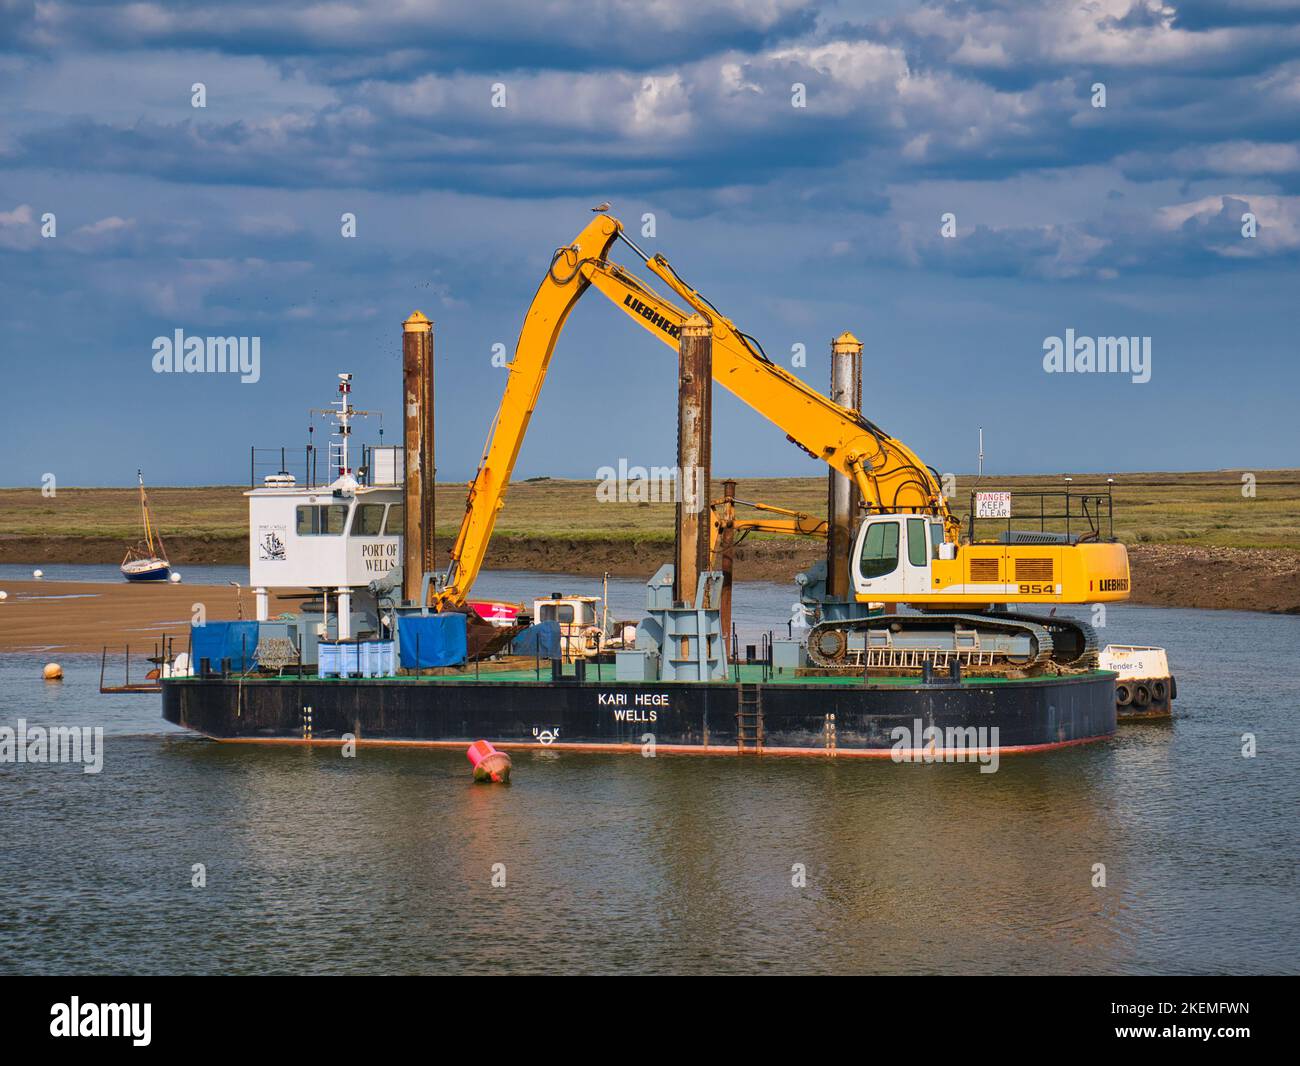 Nel porto di Wells, Norfolk, Regno Unito, draga del porto Kari Hege, un pontone specializzato 20m per 10m con tecnologia di monitoraggio della profondità. Foto Stock